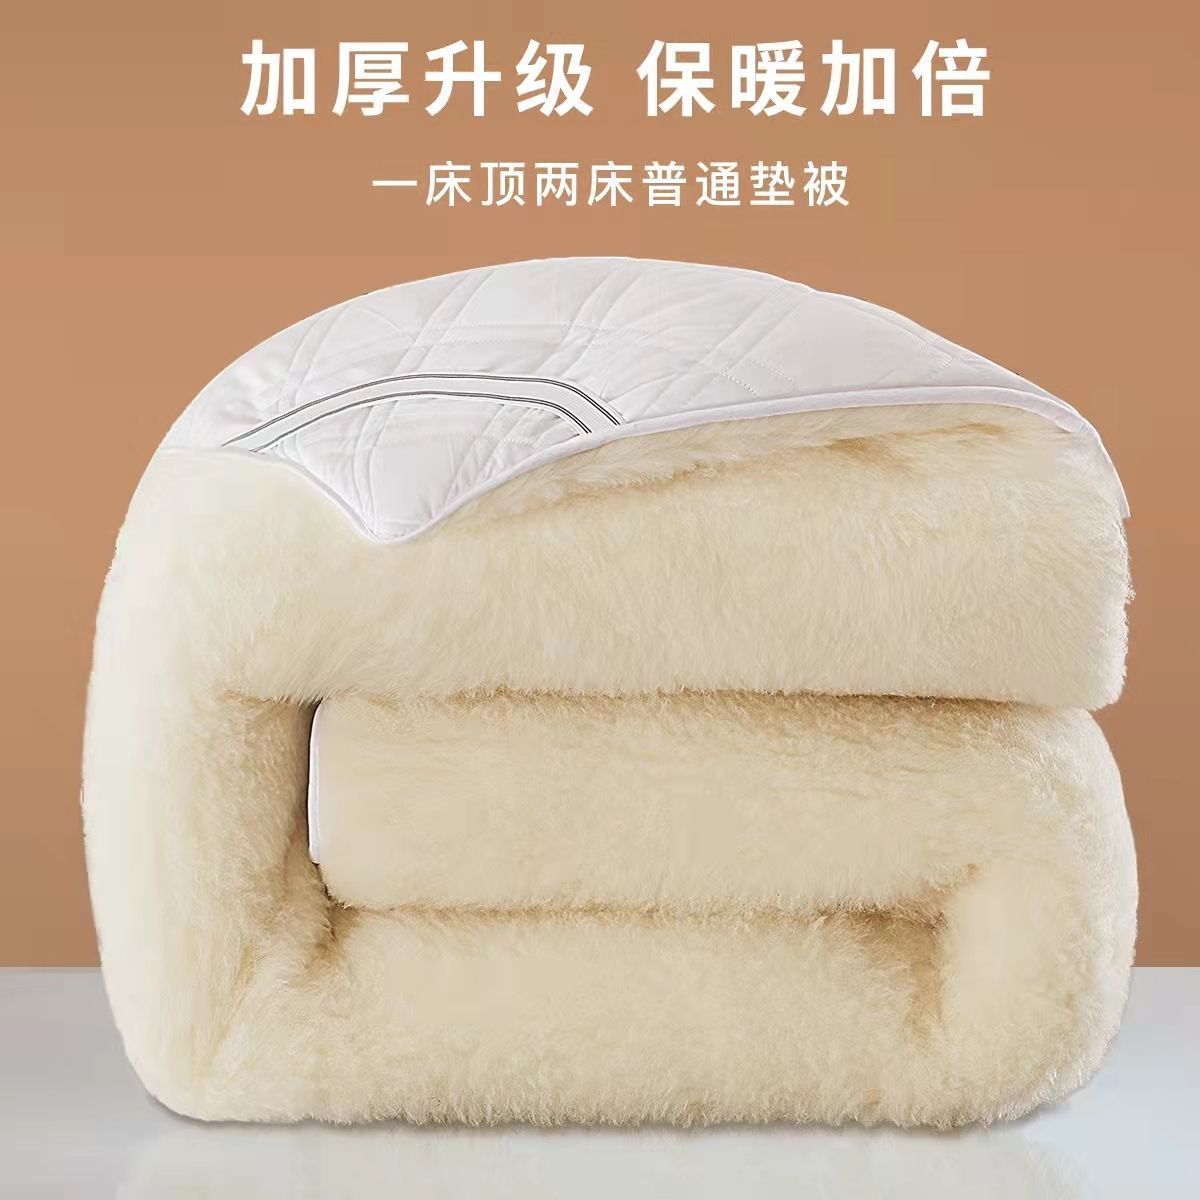 澳洲羊毛垫被褥子正品纯羊毛床垫子加厚保暖家用长绒毛毯单人双人